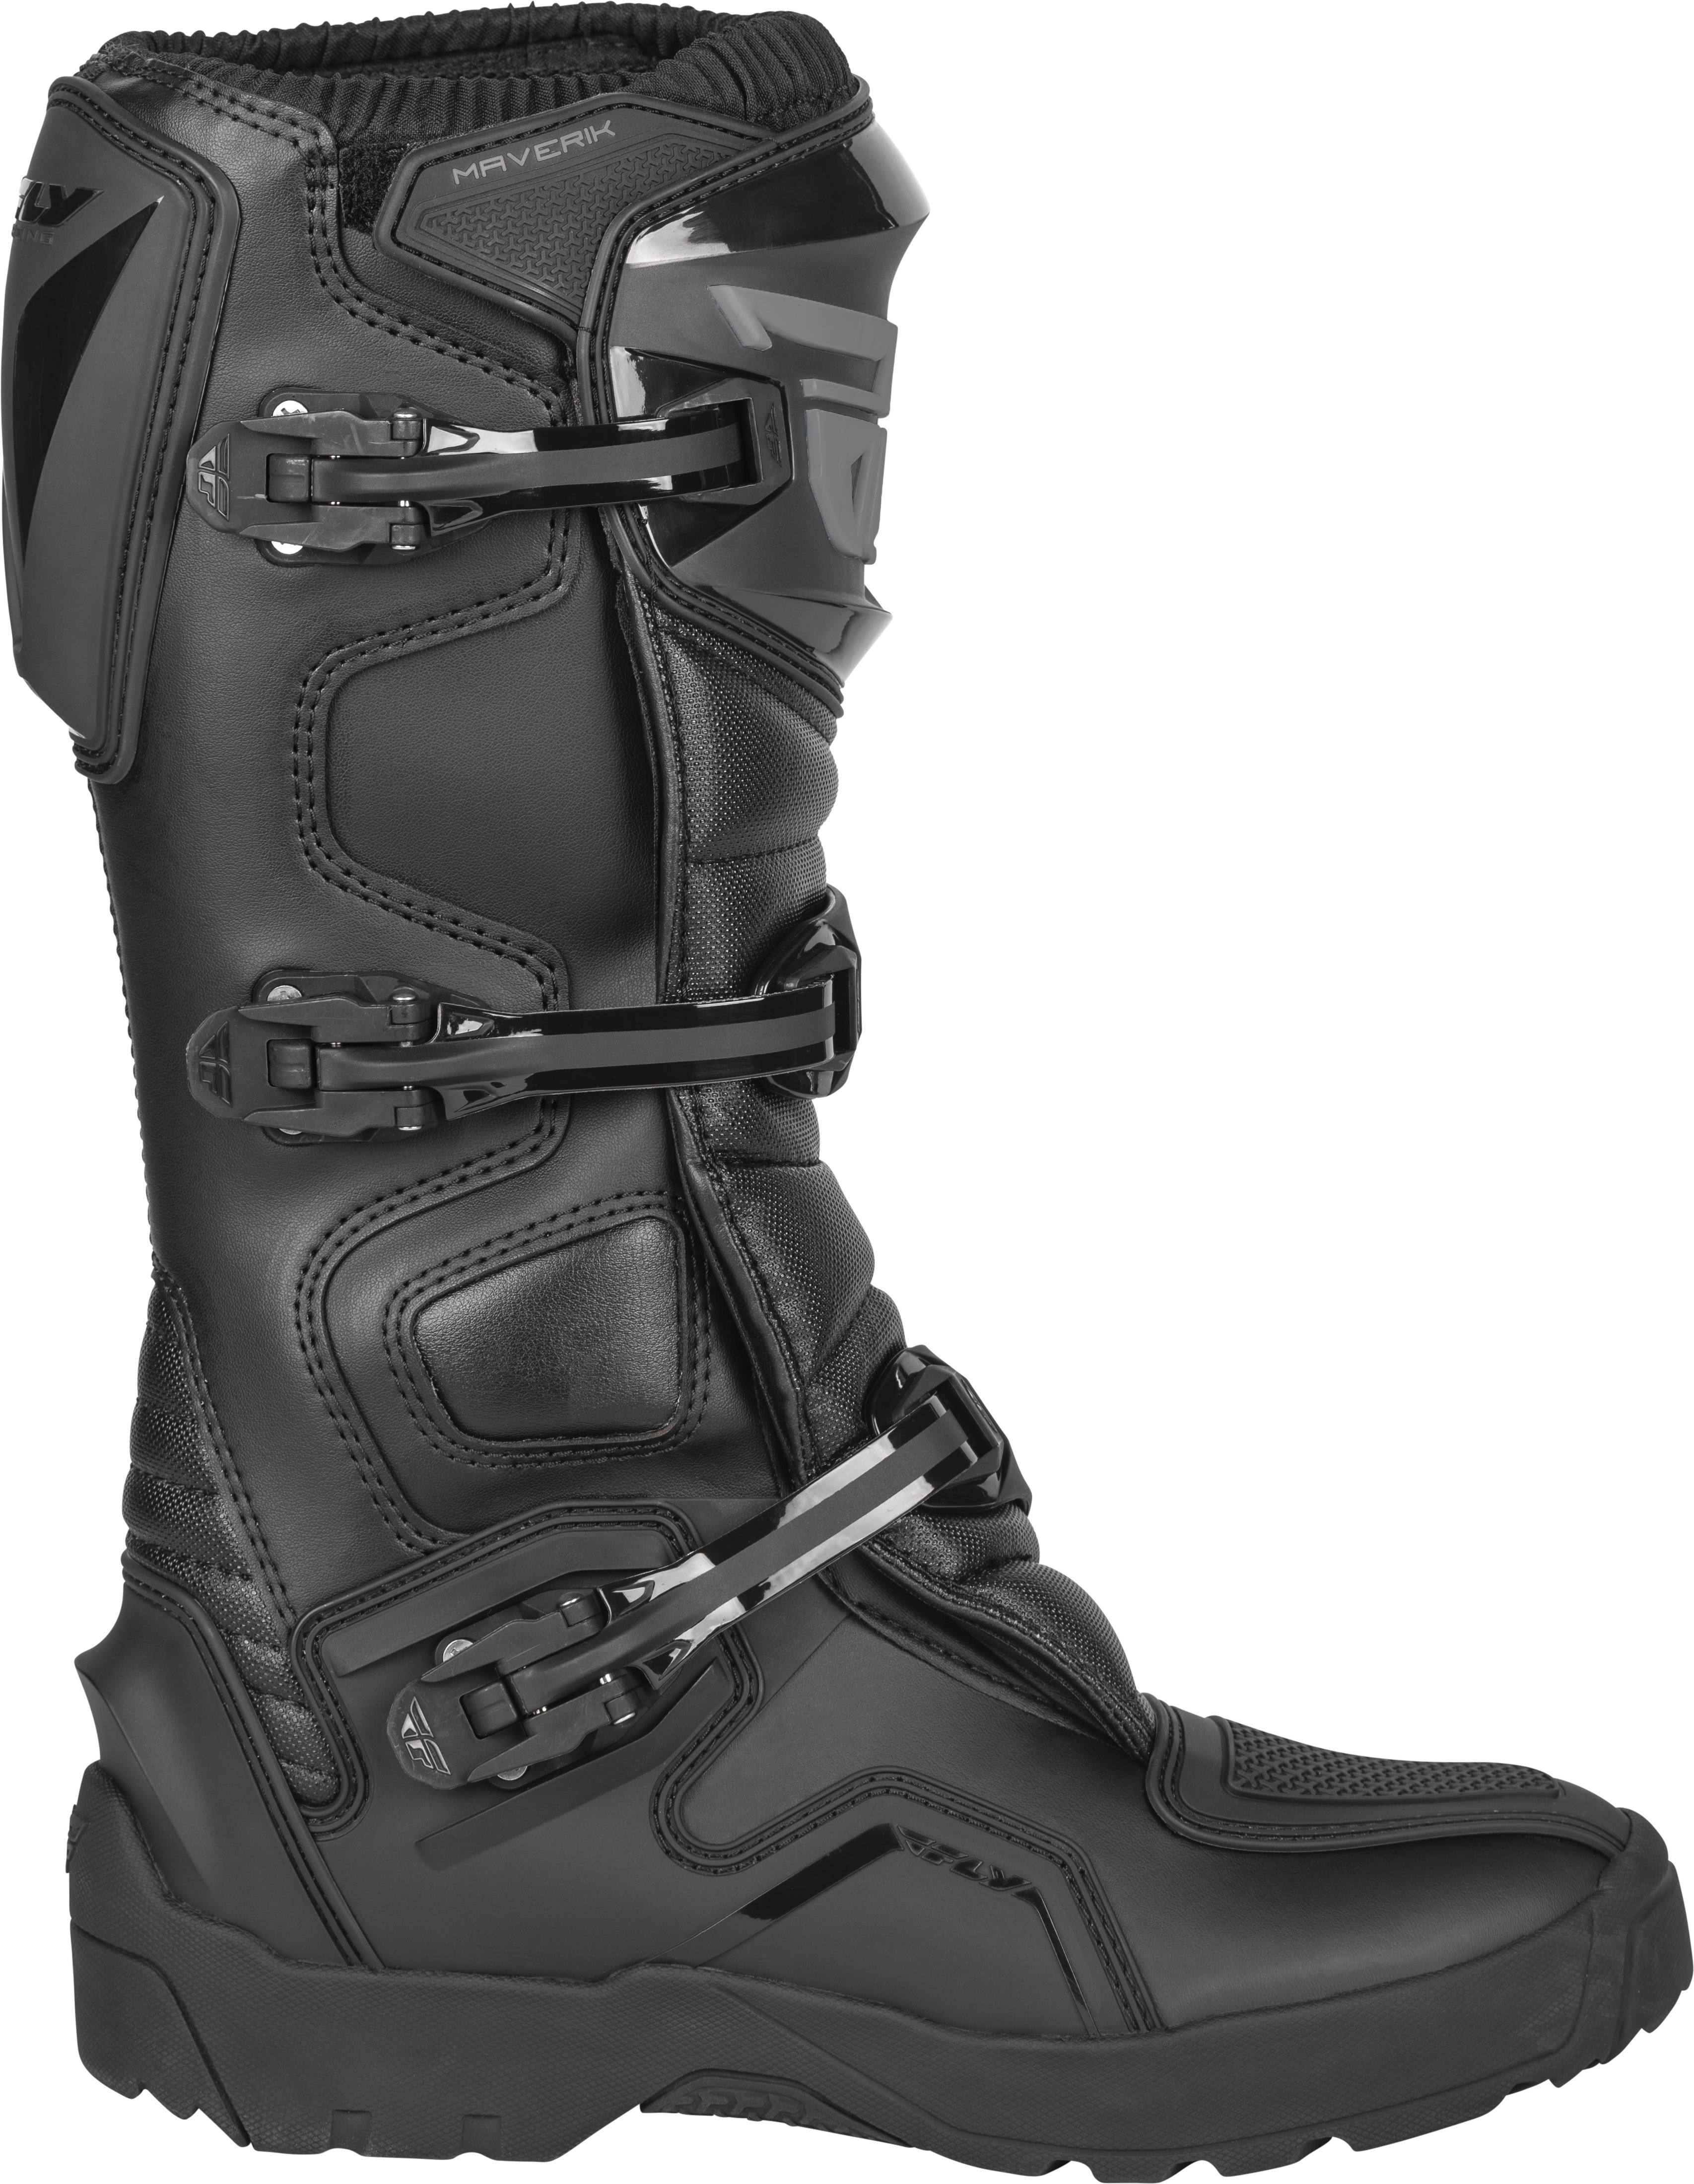 Maverik Enduro Boot Black Size 12 - Click Image to Close